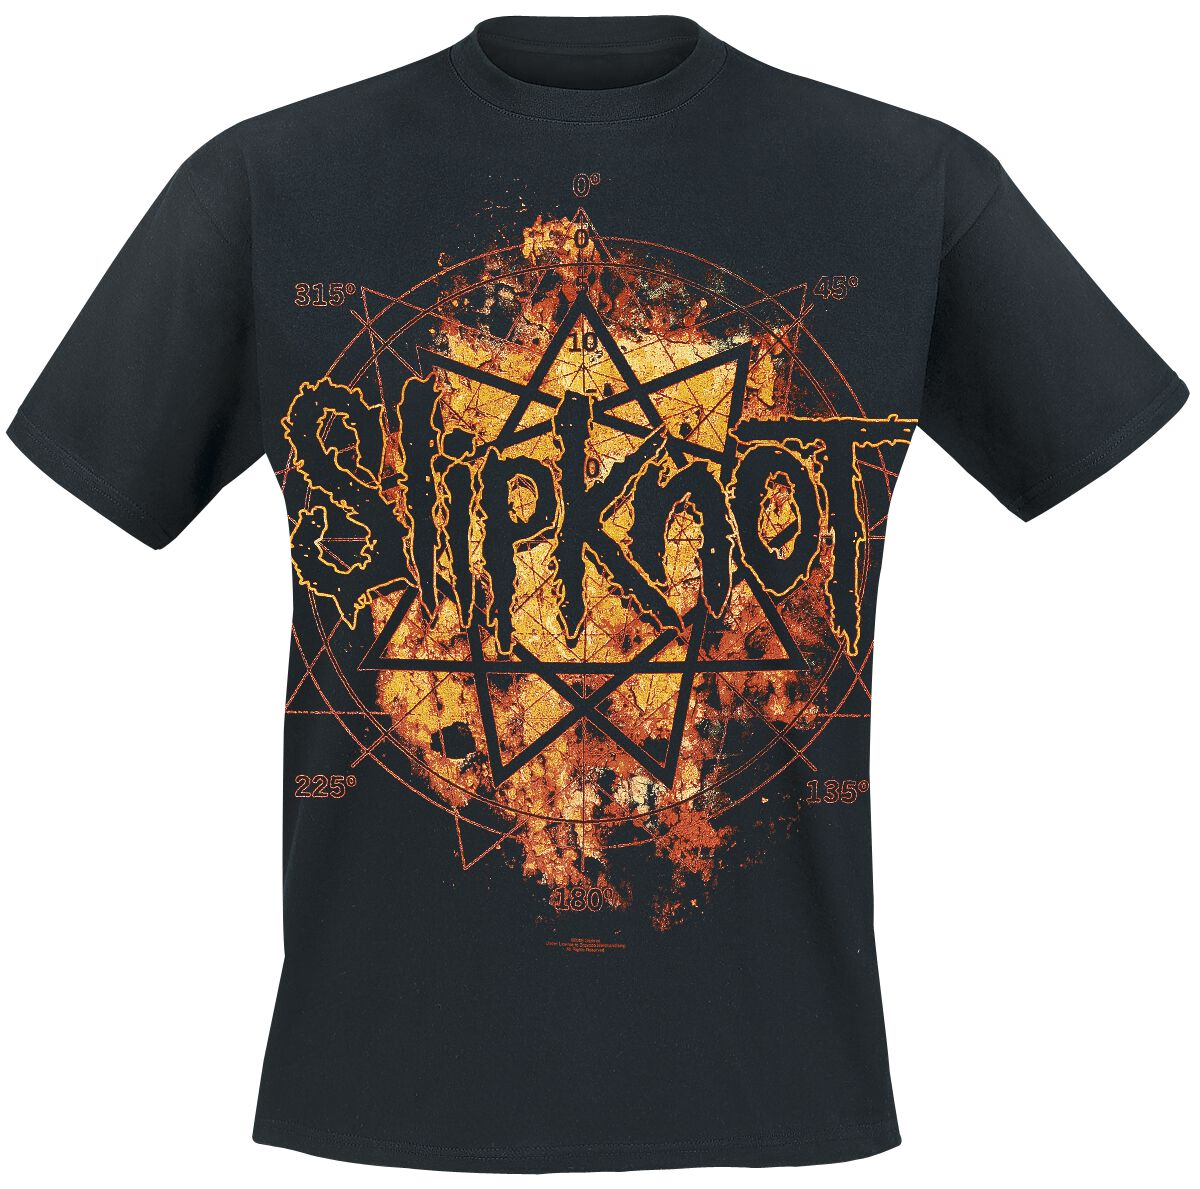 Slipknot T-Shirt - Radio Fires - S bis XXL - für Männer - Größe L - schwarz  - Lizenziertes Merchandise!